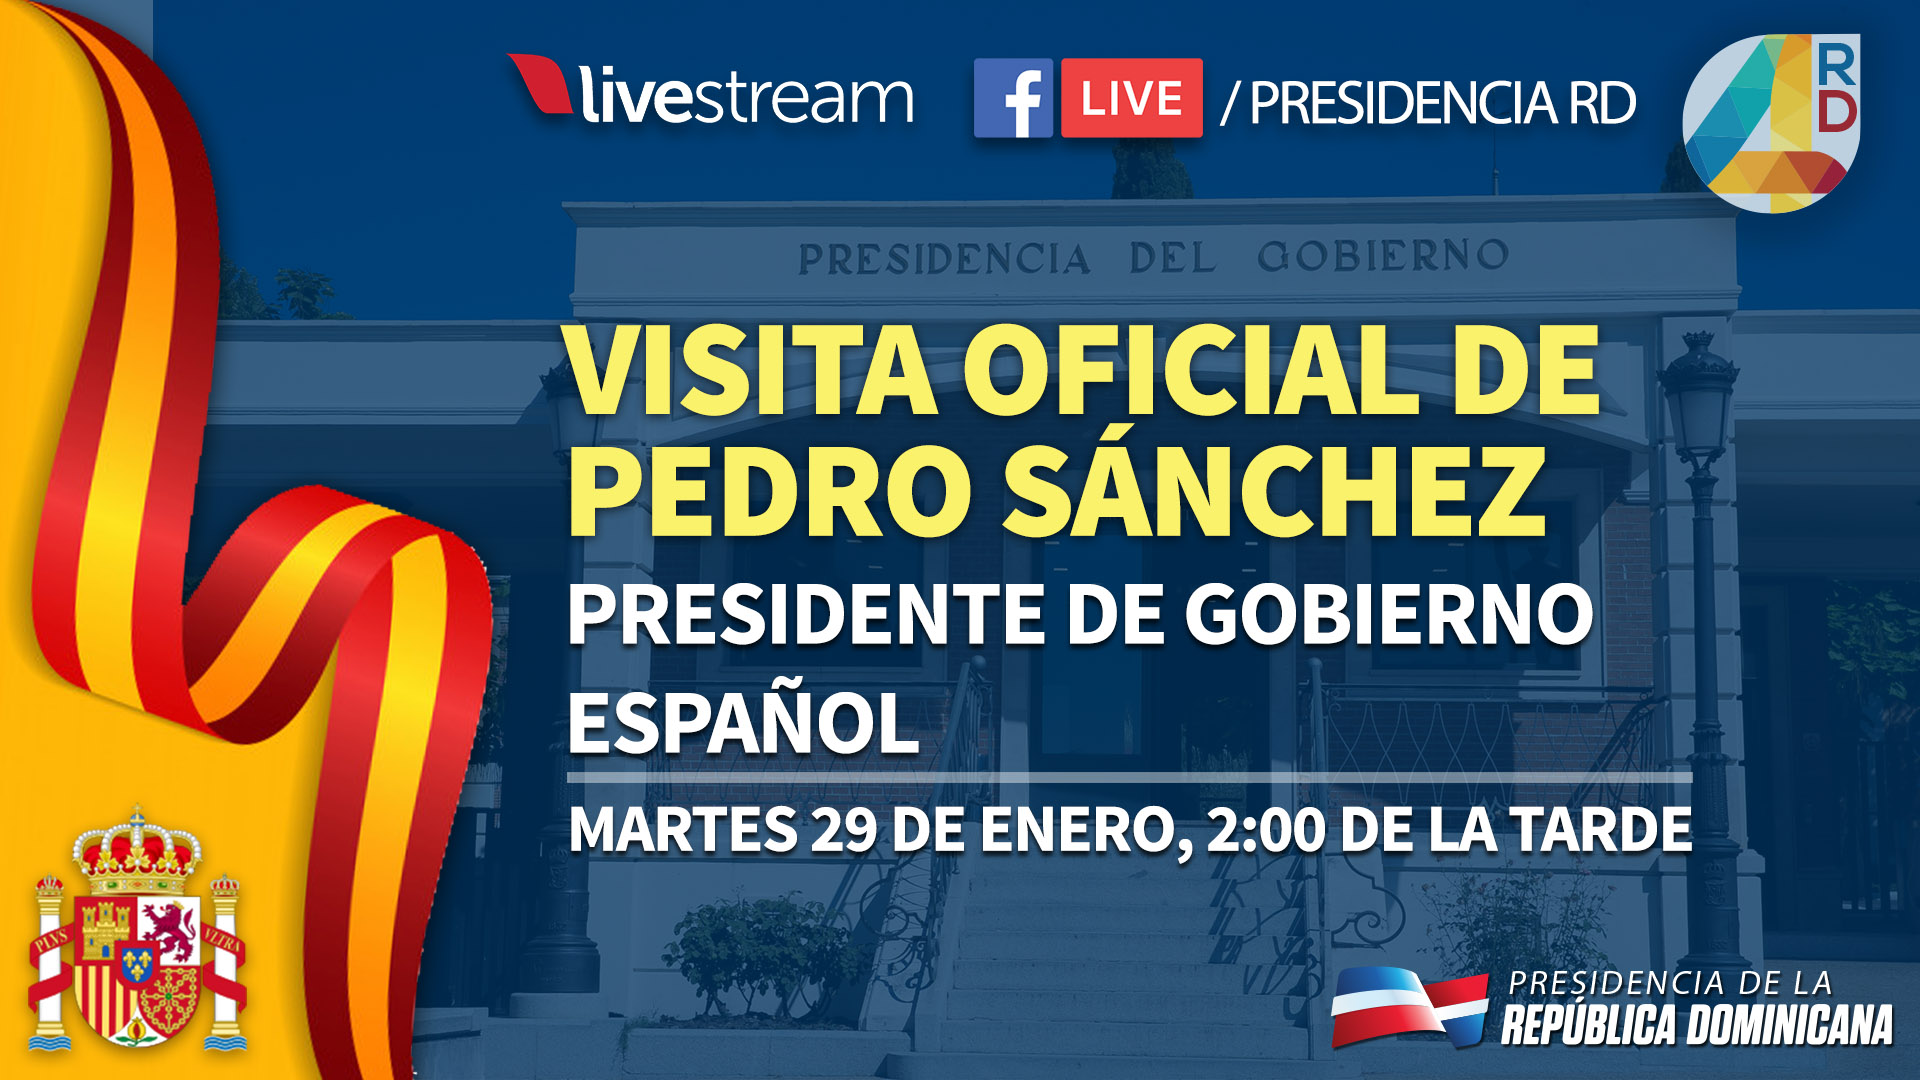 REPÚBLICA DOMINICANA: Presidente Danilo Medina recibirá en el Palacio Nacional a homólogo español Pedro Sánchez; firmarán acuerdos